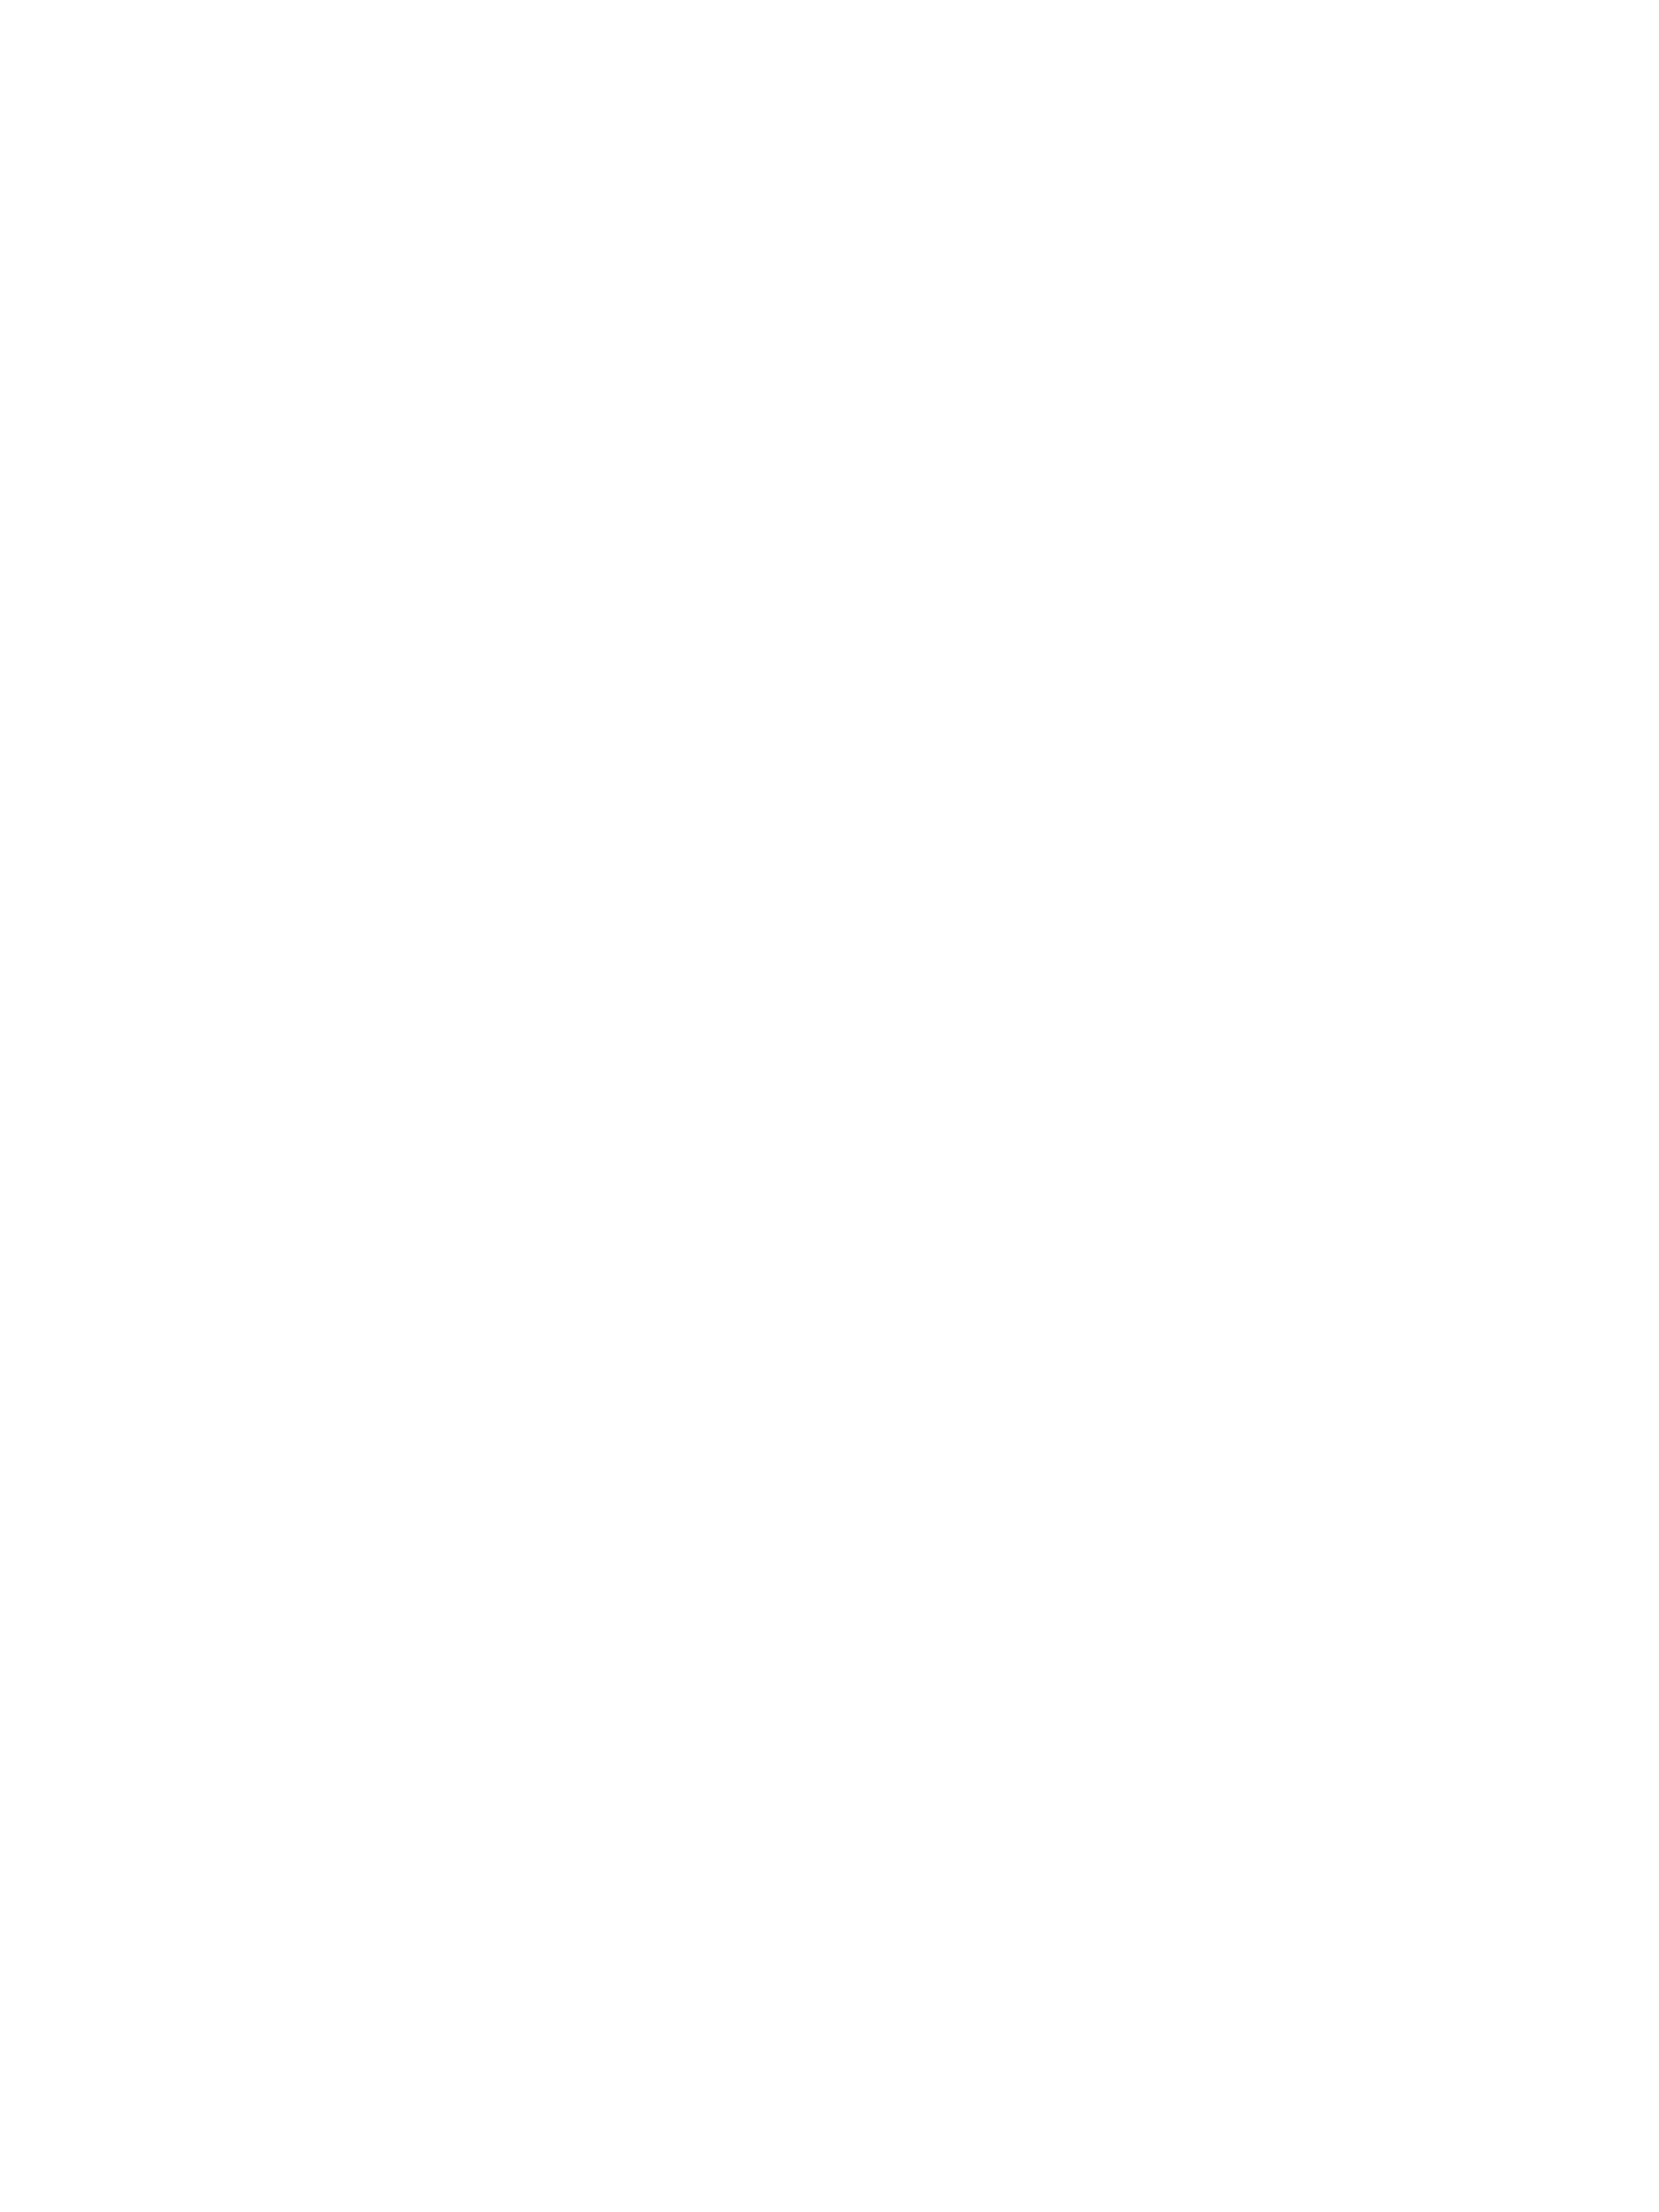 2603